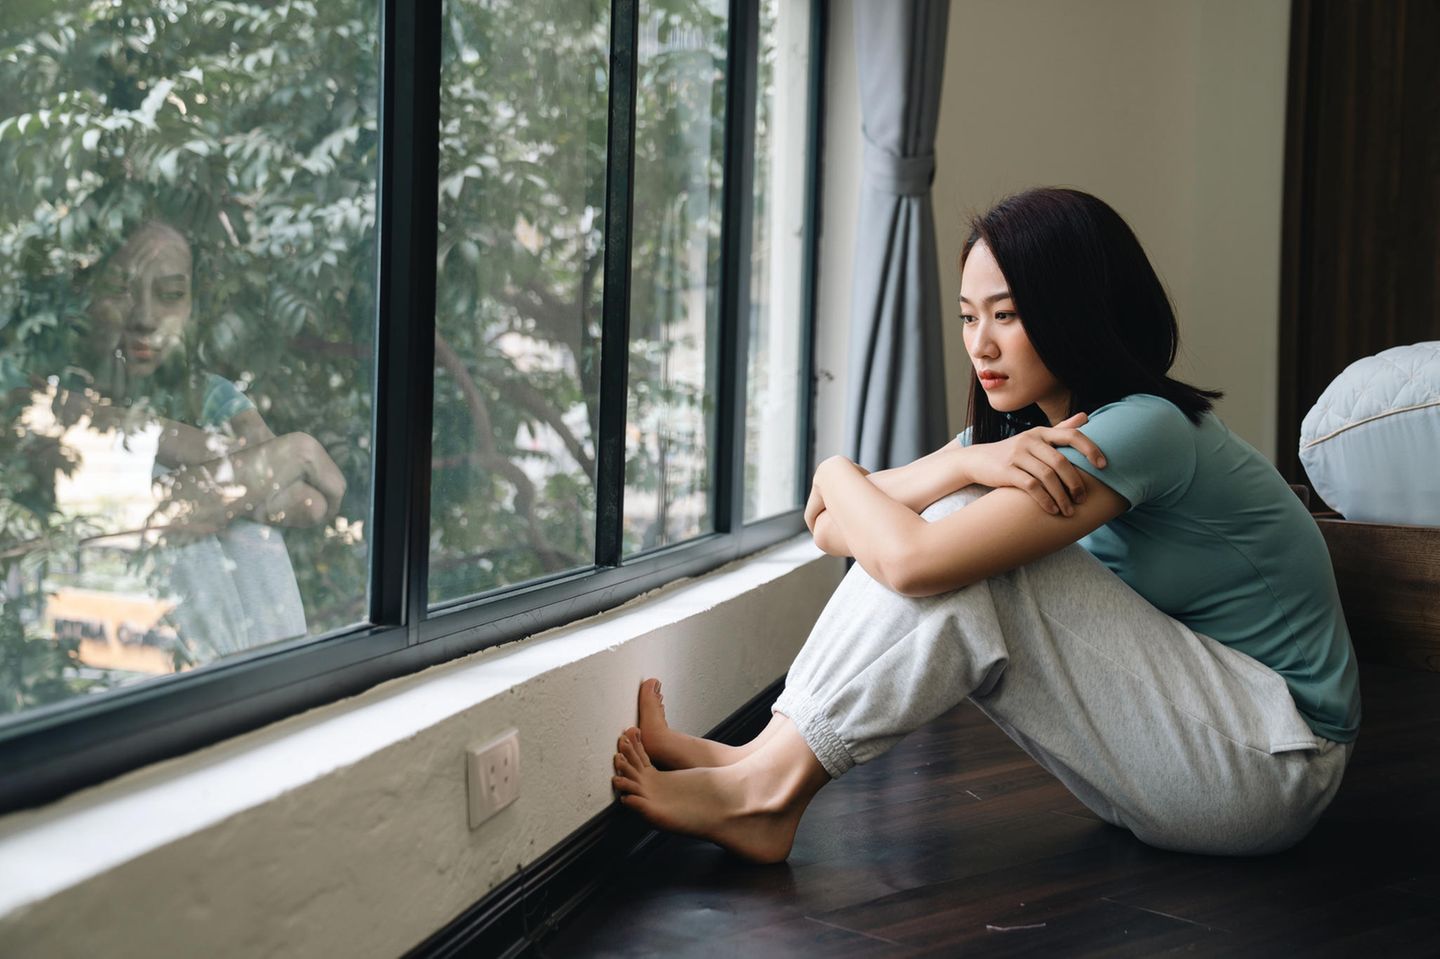 Danxiety: Junge Frau sitzt auf Fußboden vor Fenster und schaut hinaus